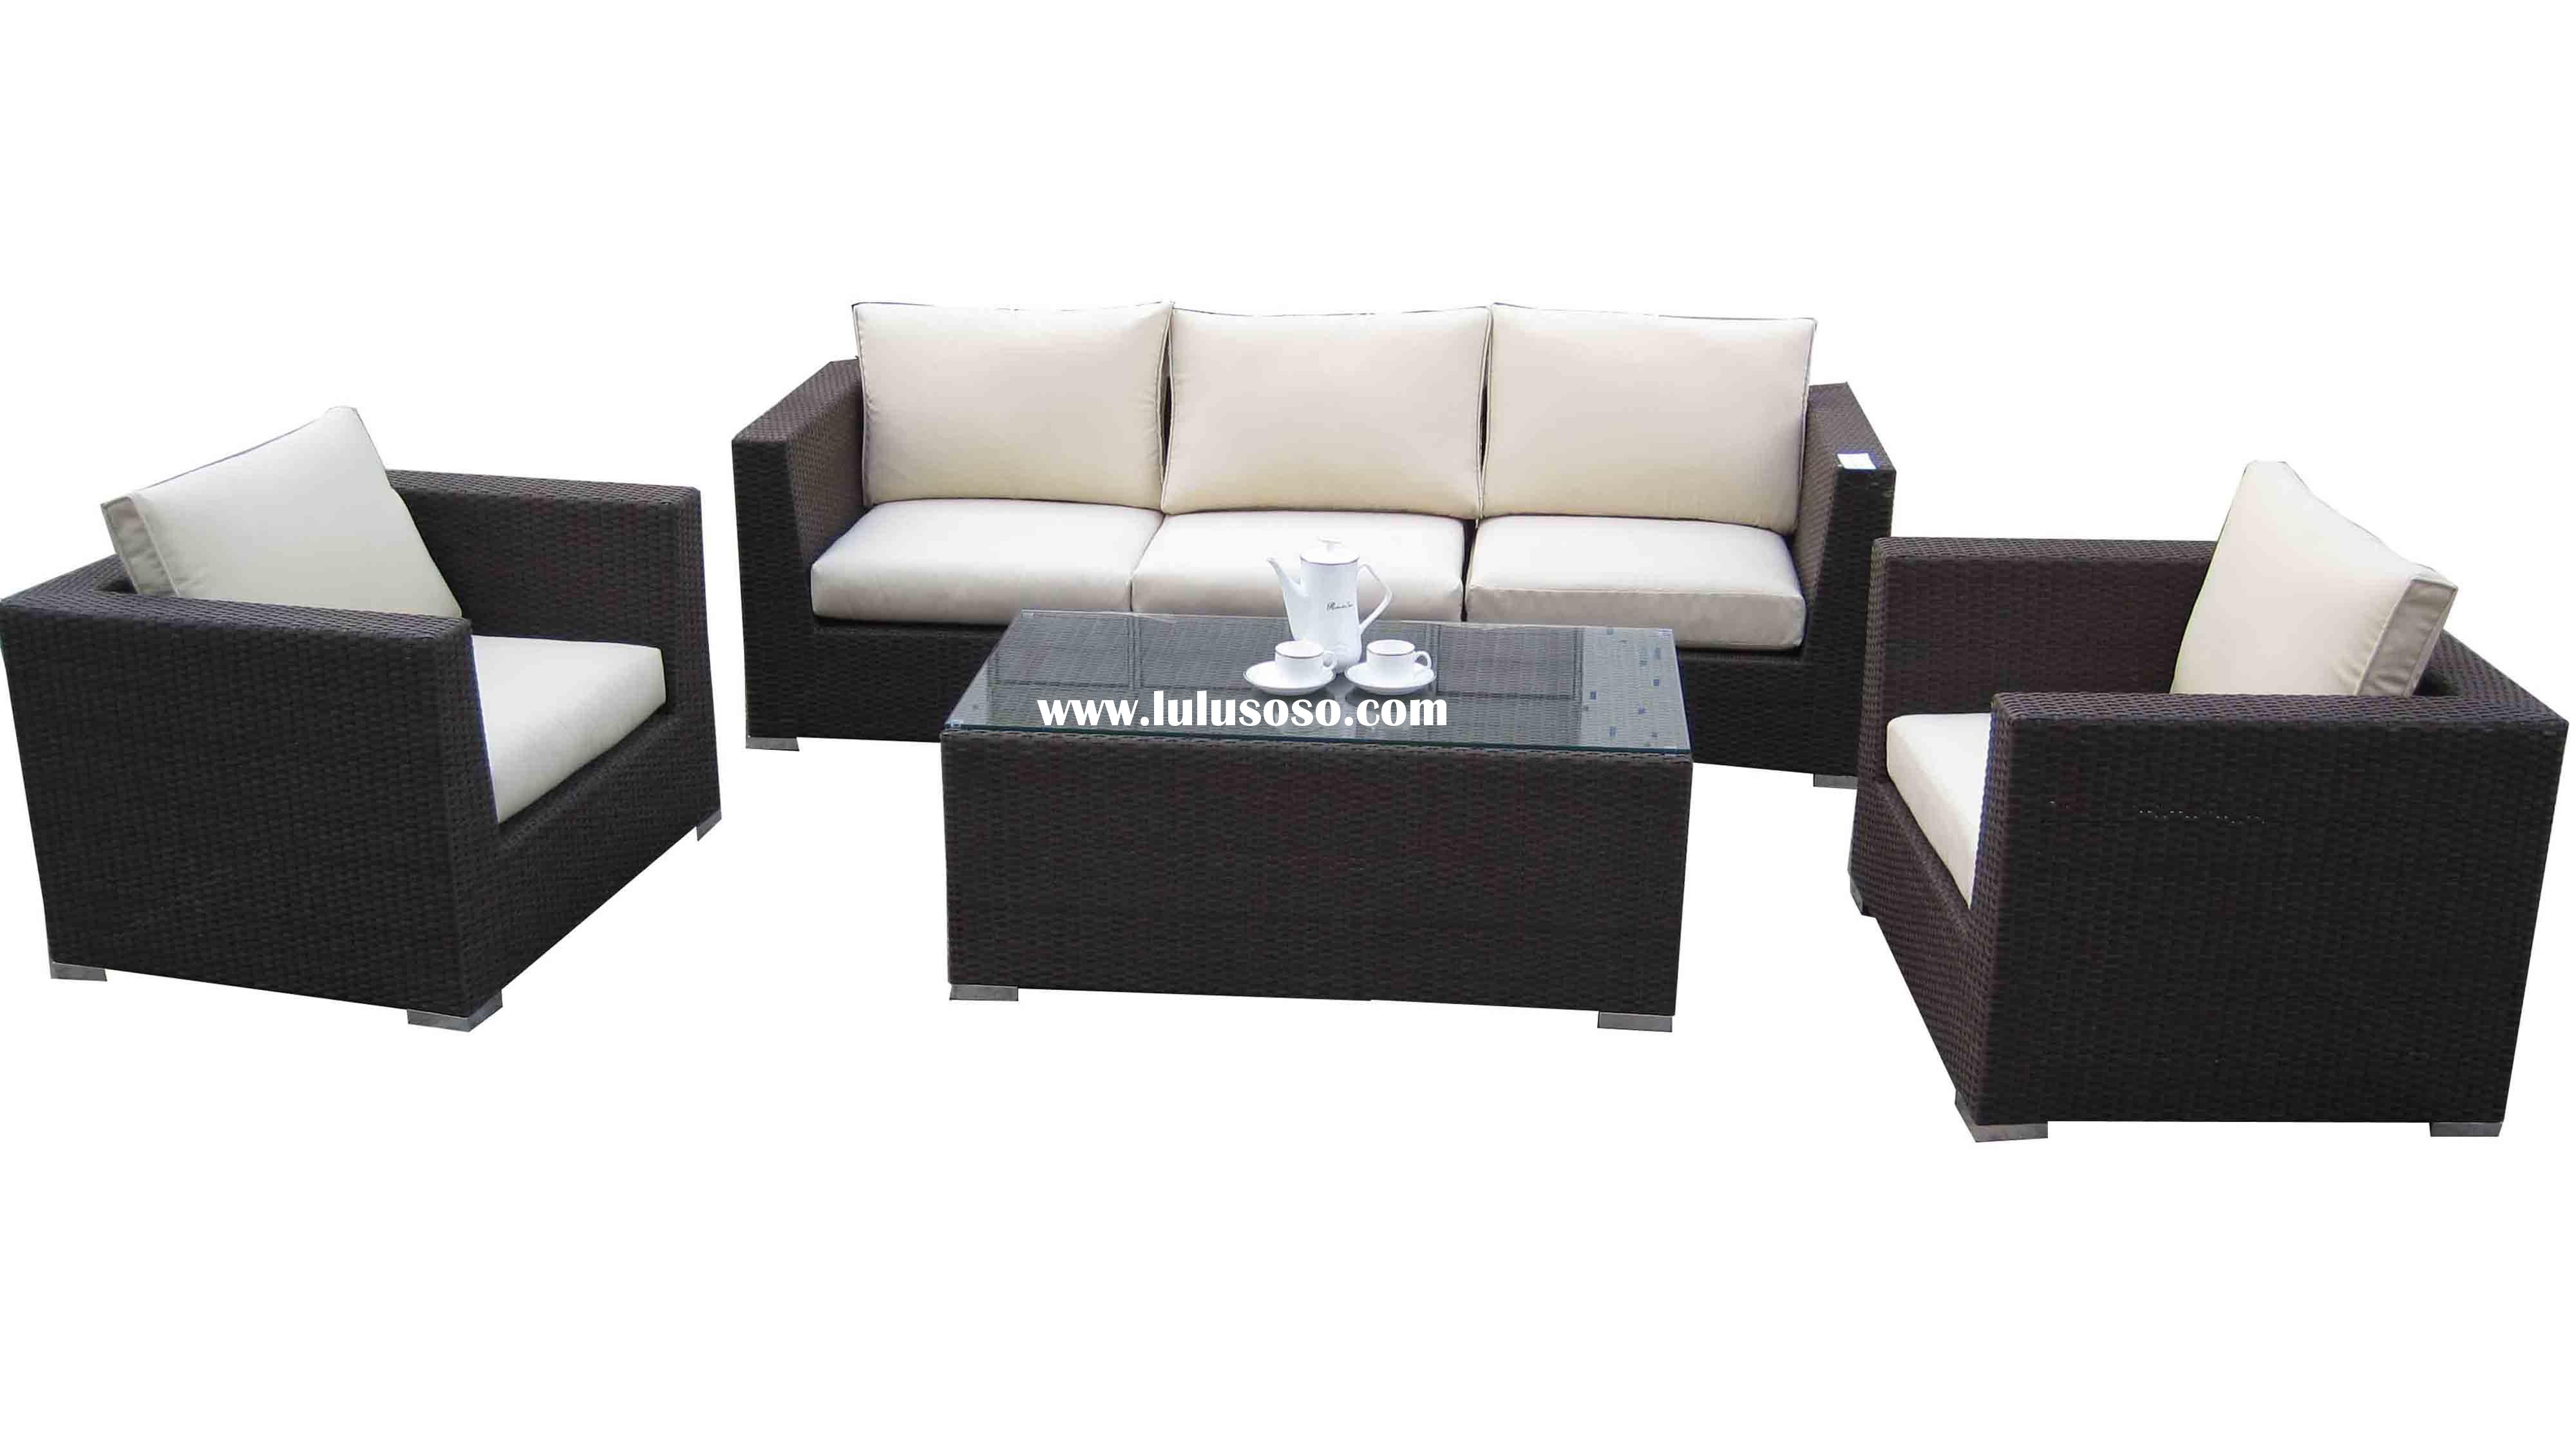 Furniture sofa set awesome furniture sofa set 57 on sofa room ideas with furniture sofa set YIQCEAB